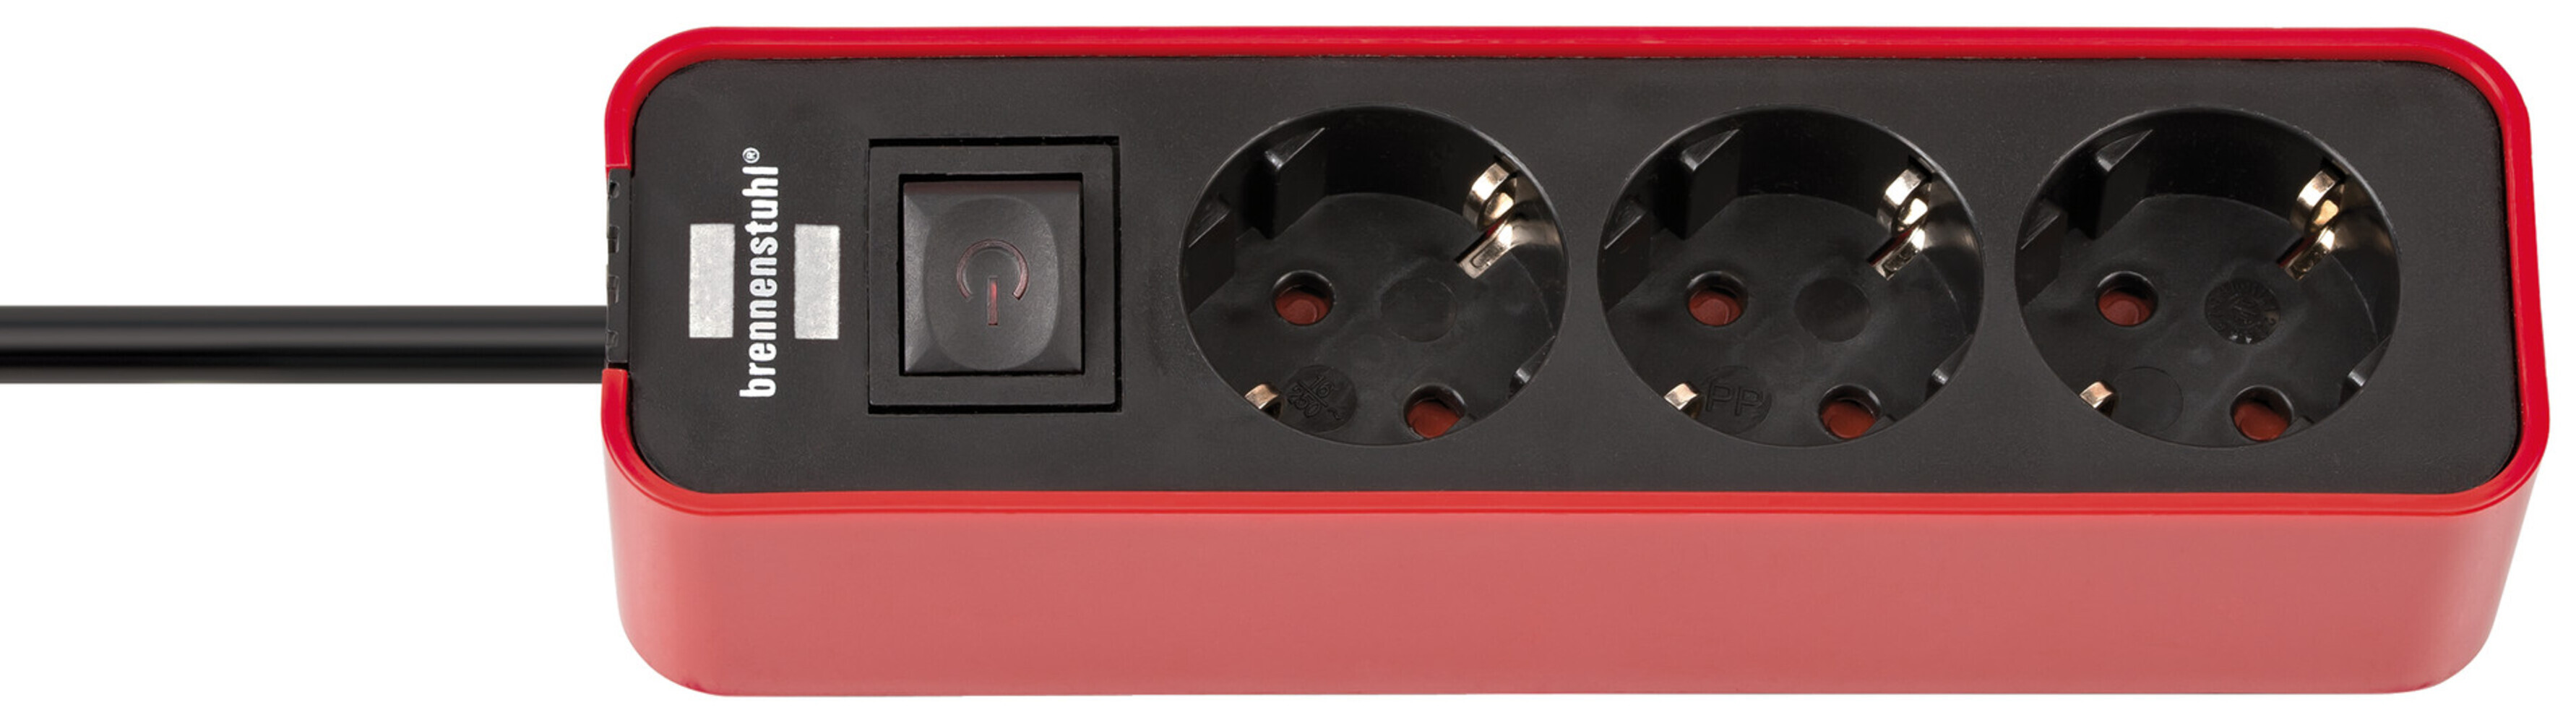 Hochwertige Brennenstuhl Steckdosenleiste in Rot-Schwarz mit 3 Steckdosen und Schalter